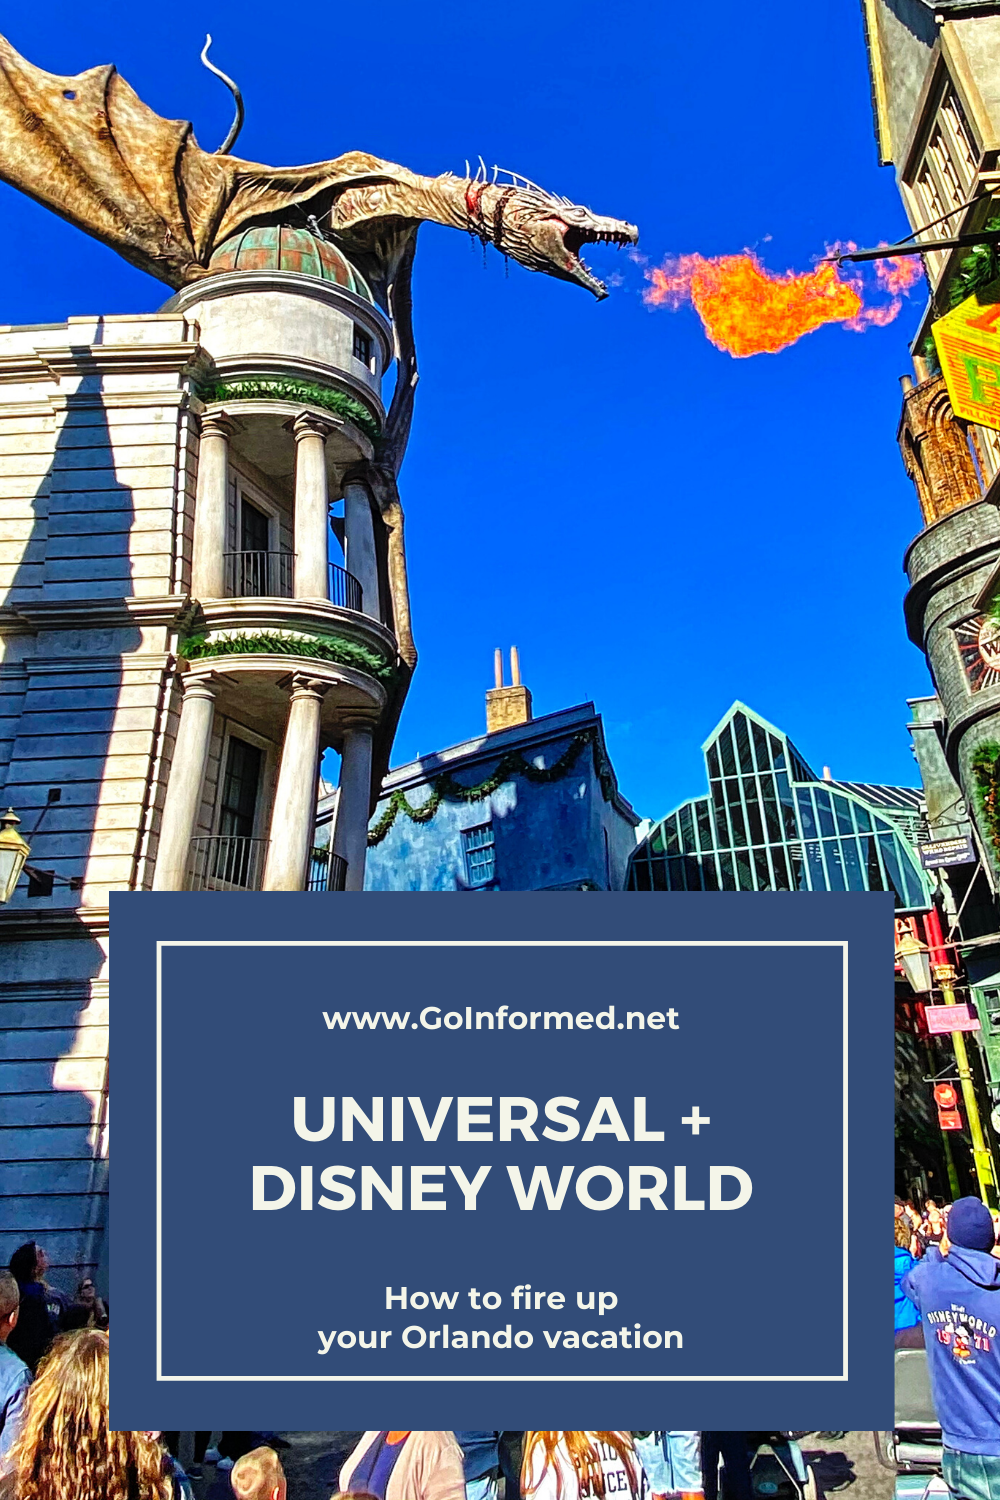 Hinzufügen eines Besuchs von Universal zu Ihrer Disney World-Reise